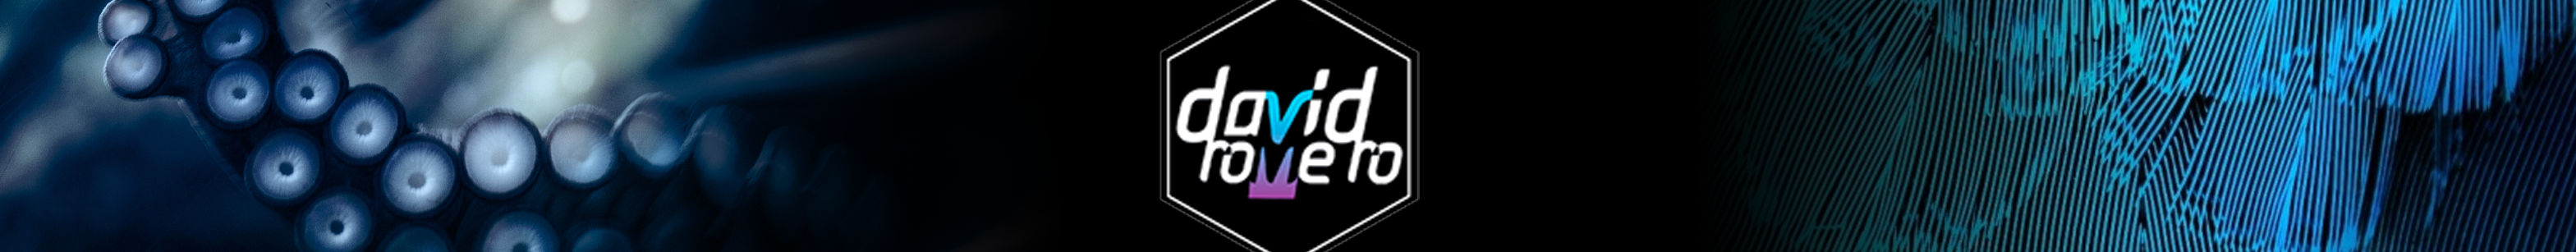 David Romero's profile banner